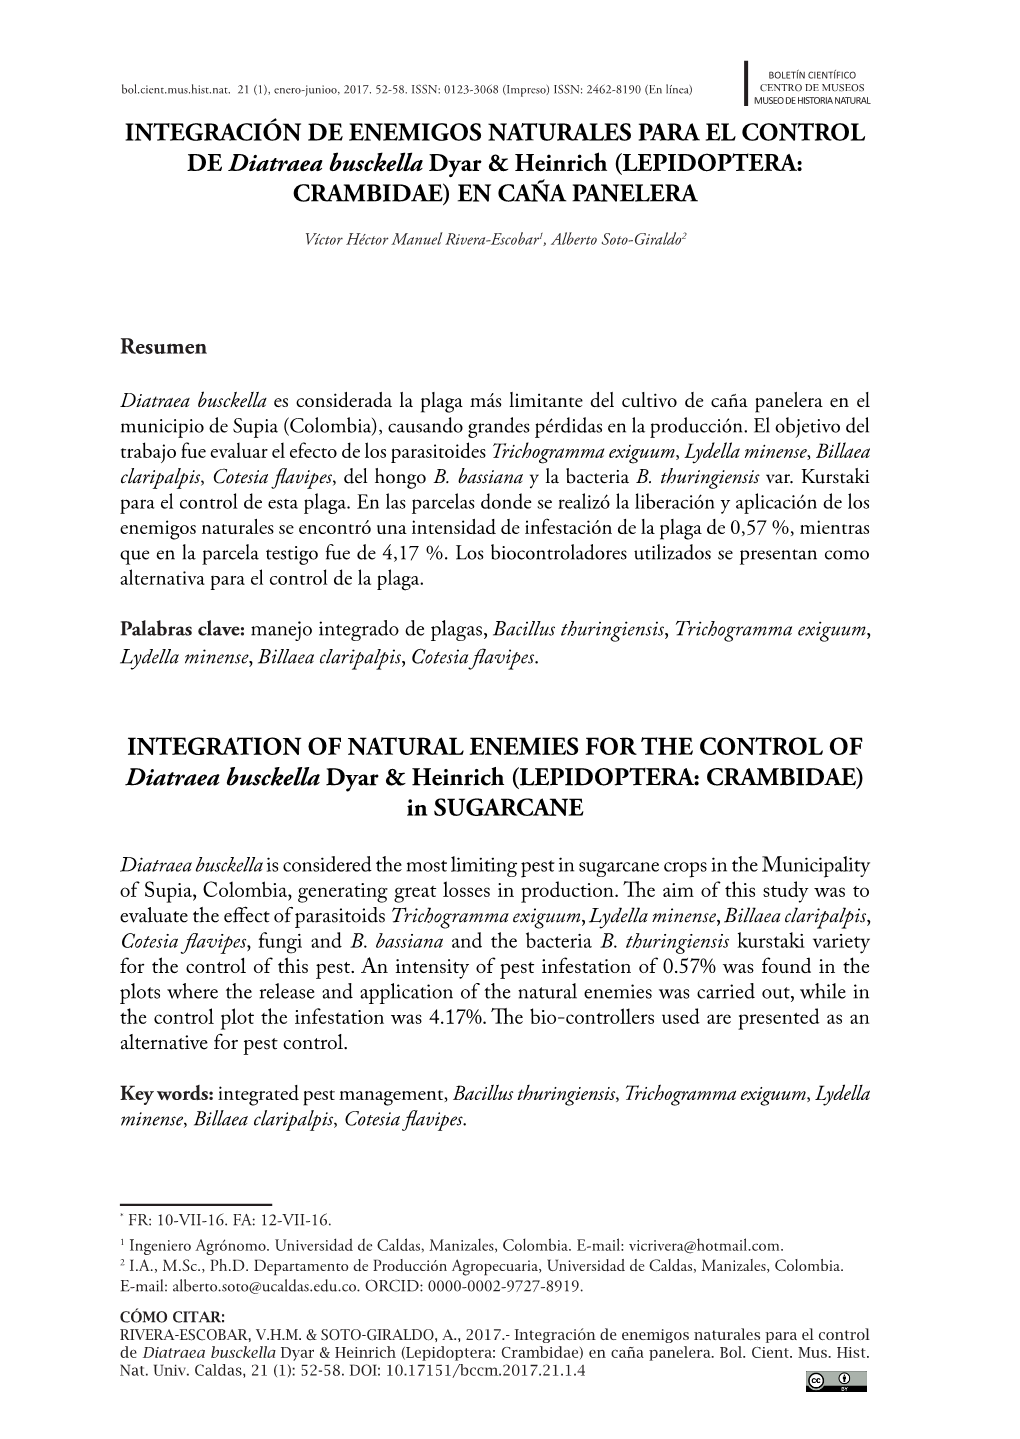 Integración De Enemigos Naturales Para El Control De Diatraea Busckella Dyar & Heinrich (Lepidoptera: Crambidae) En Caña P